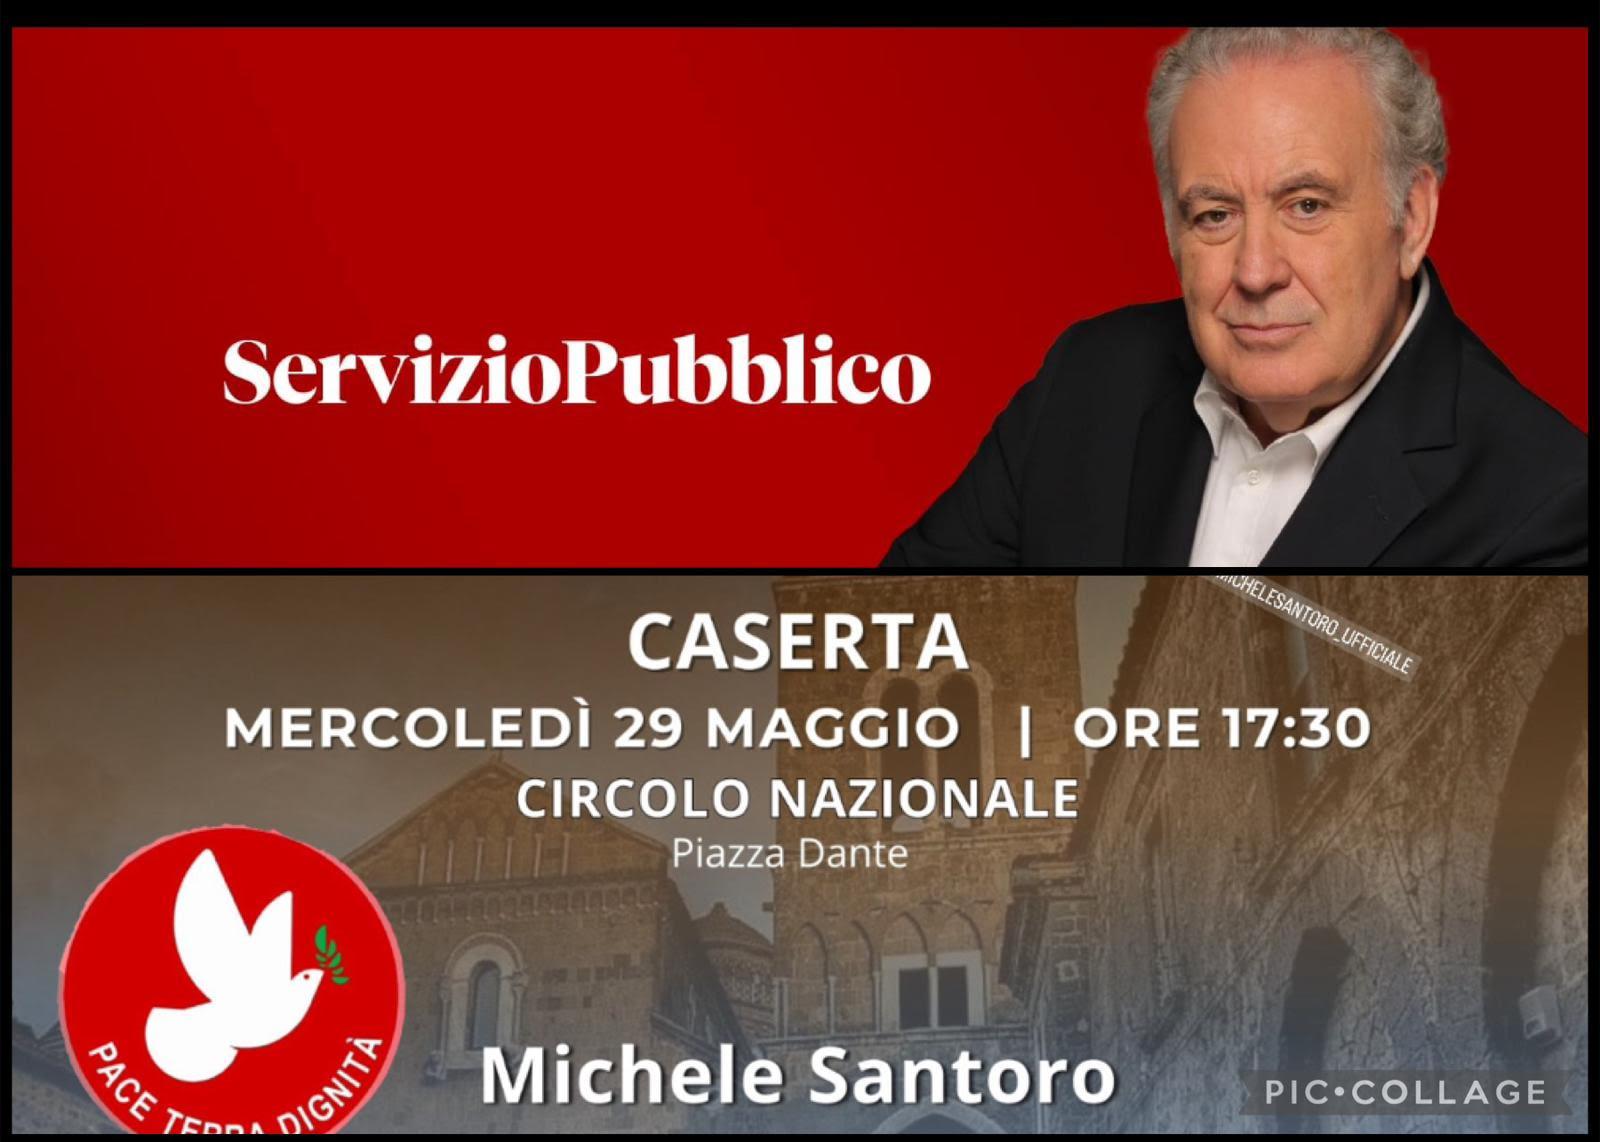 Occasione per i cittadini di Caserta e provincia di poter incontrare Michele Santoro